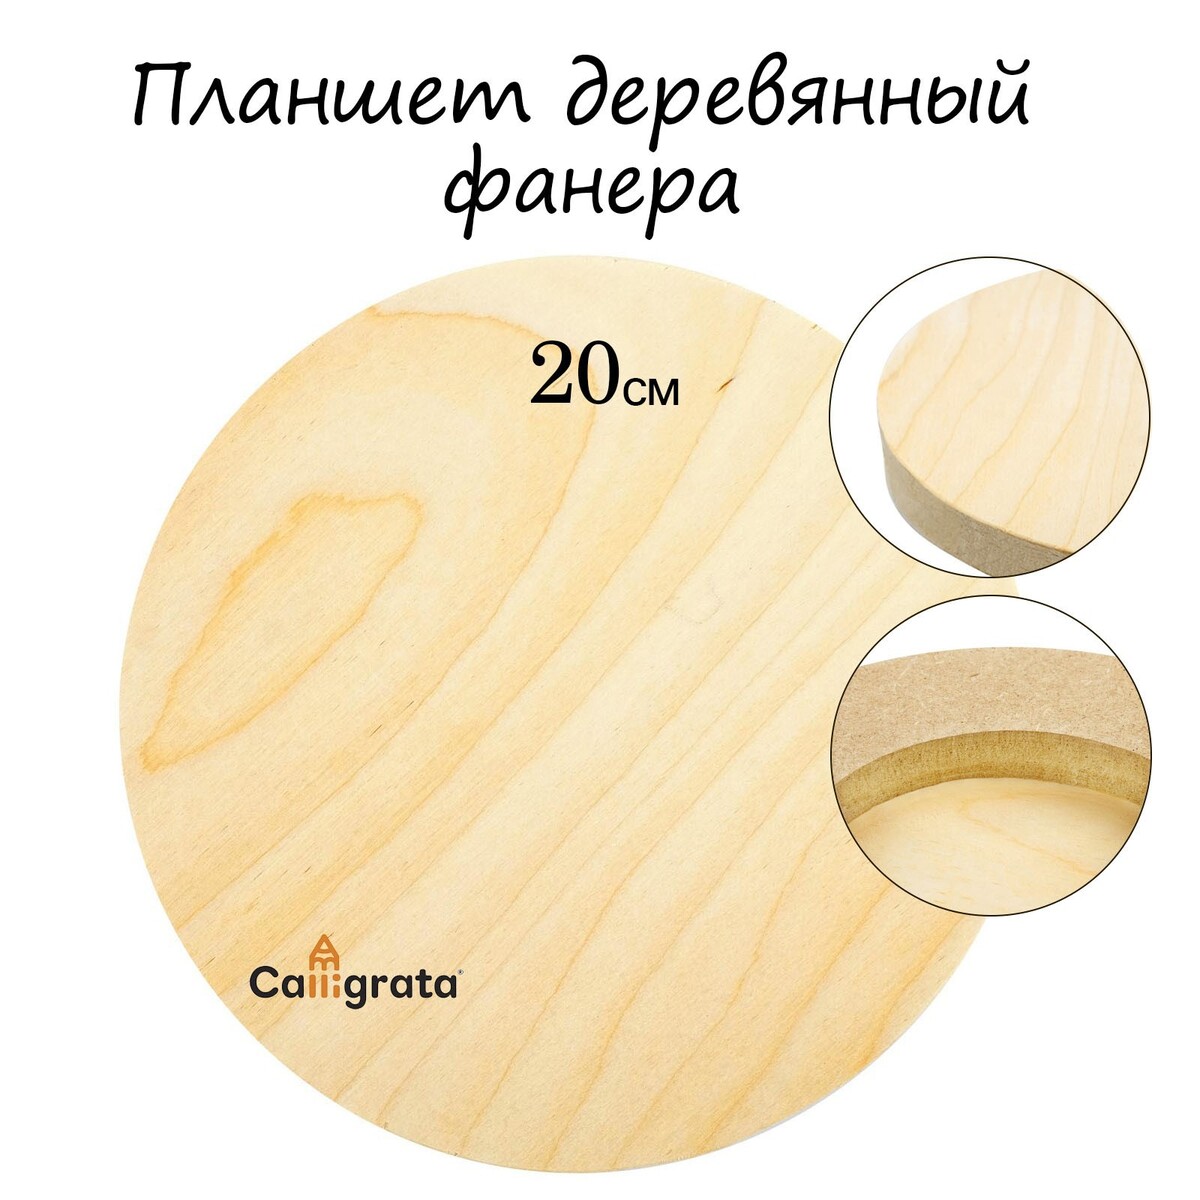 Планшет круглый деревянный фанера d-20 х 2 см, сосна, calligrata планшет деревянный 20 х 30 х 2 см фанера